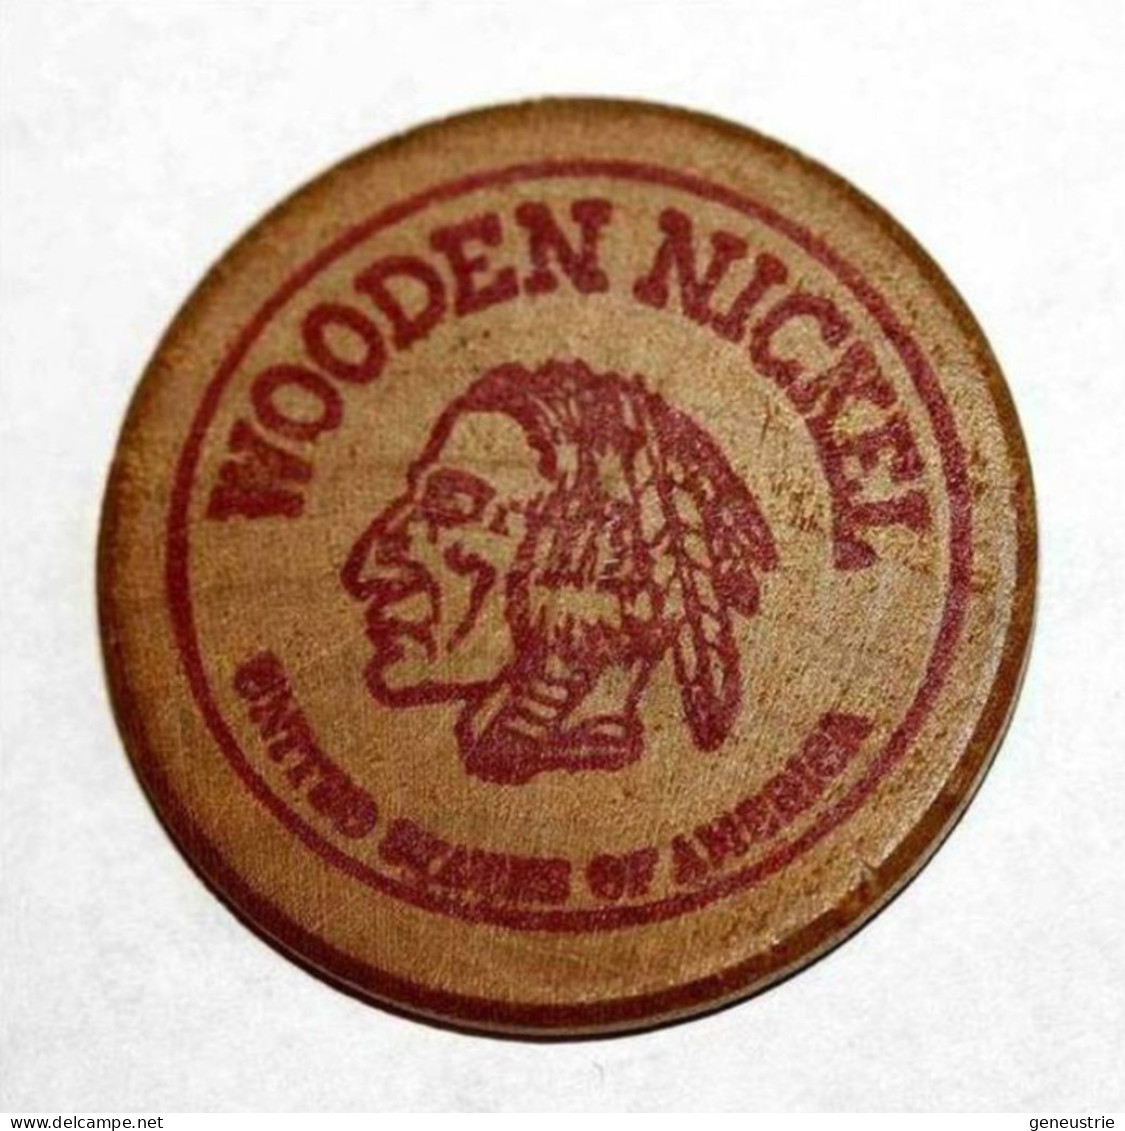 Wooden Token 1$ - Wooden Nickel - Jeton Bois Monnaie Nécessité - Tête D'Indien - One Dollar - Etats-Unis - Monétaires/De Nécessité